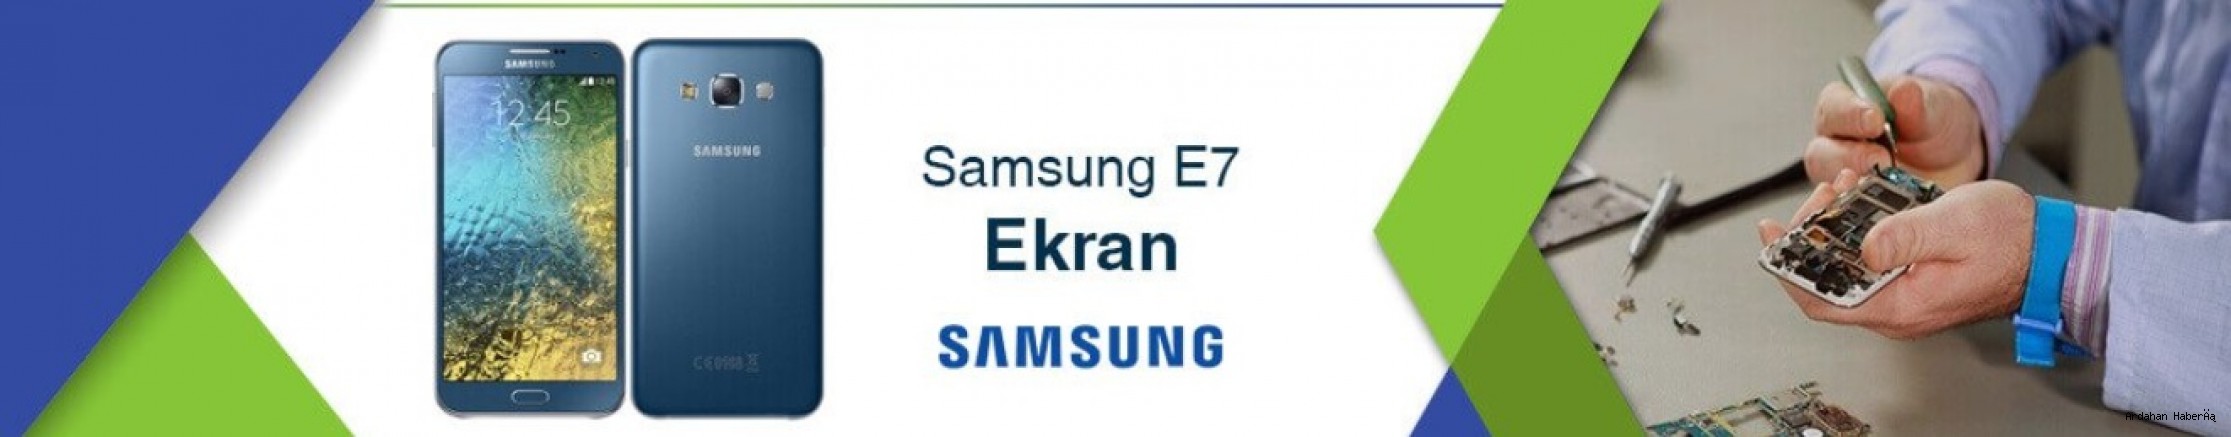 Samsung E7 Ekran Fiyatı En Ucuz 